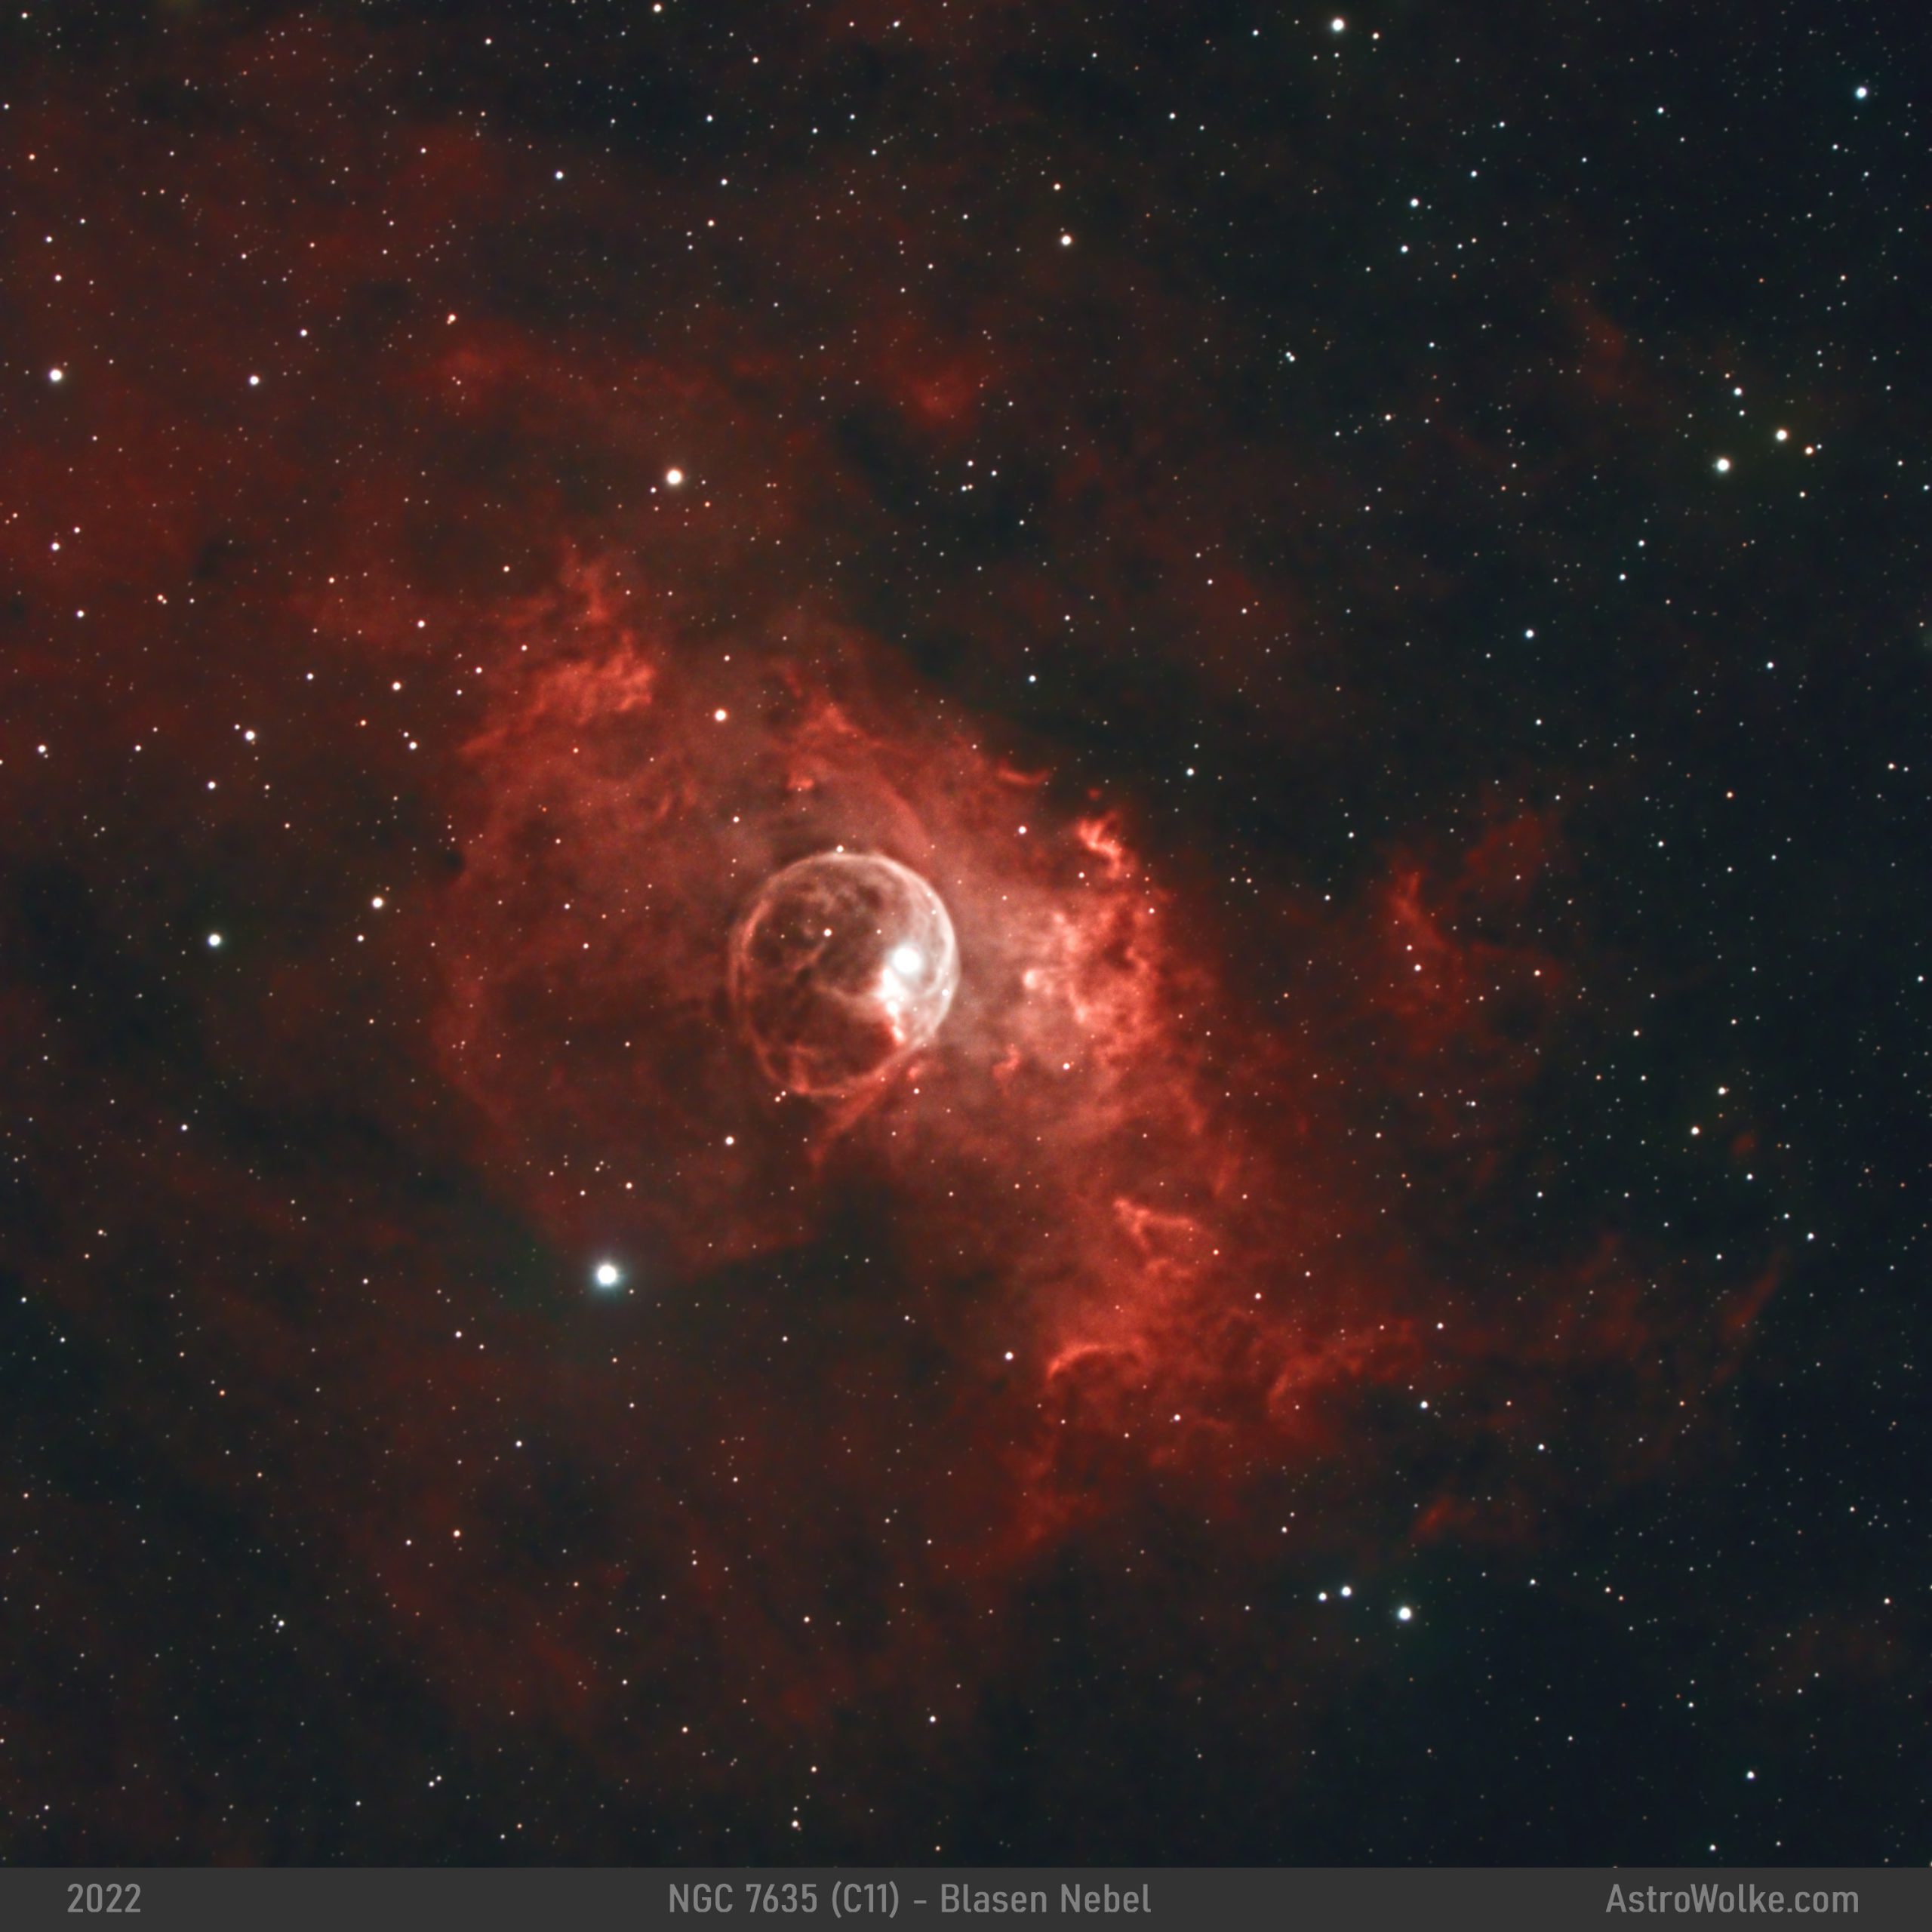 NGC 7635 - Blasennebel